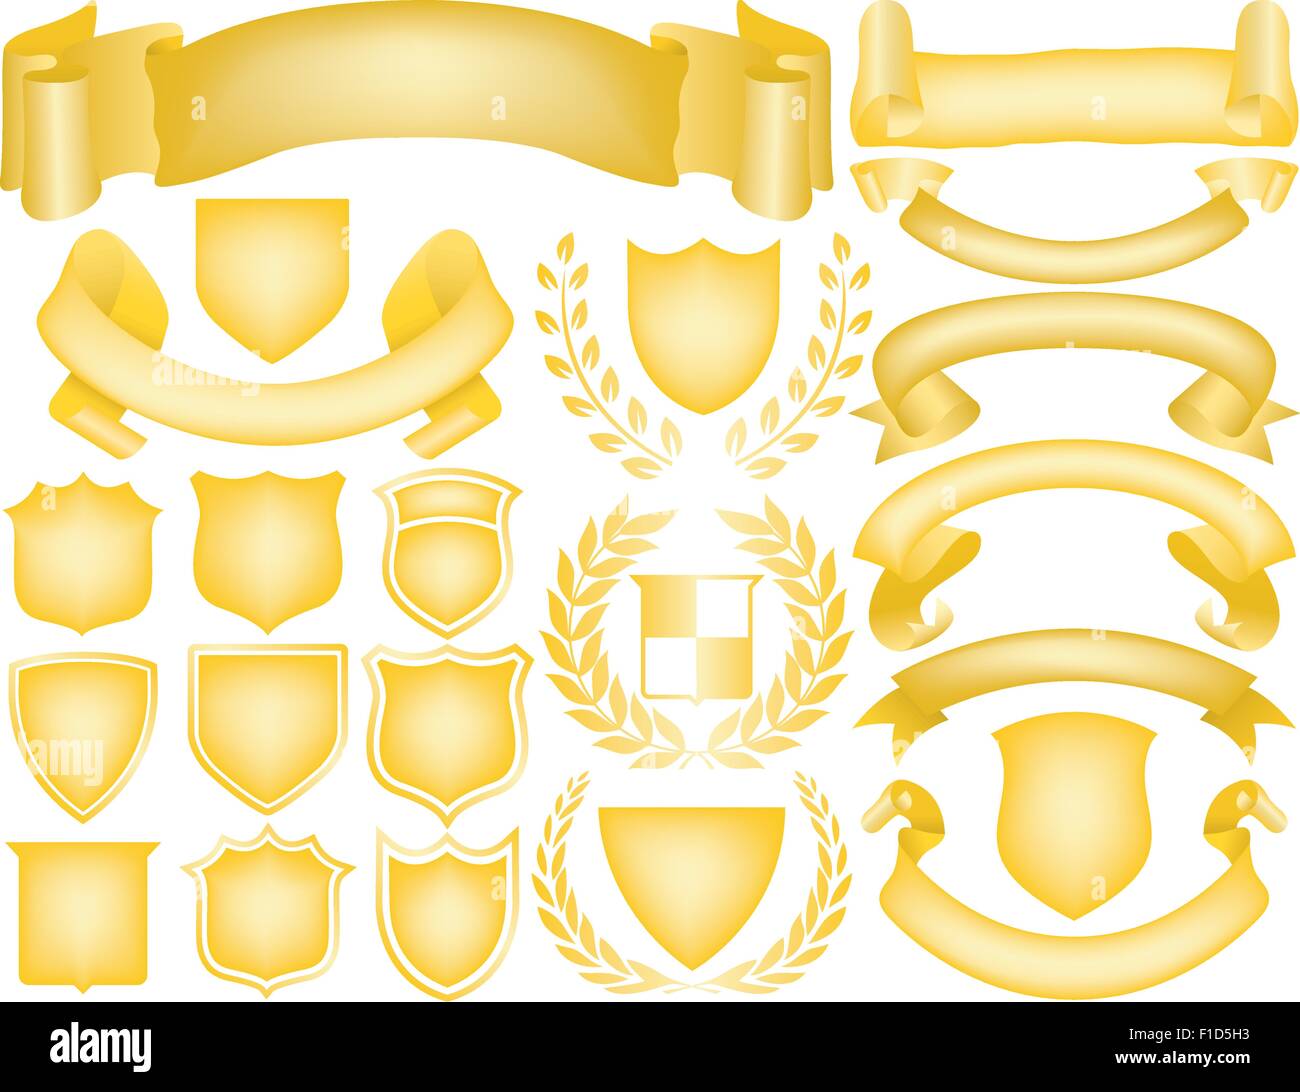 Nastri d'oro, banner, allori e scudi. Mescolare e abbinare per creare il proprio logo Illustrazione Vettoriale